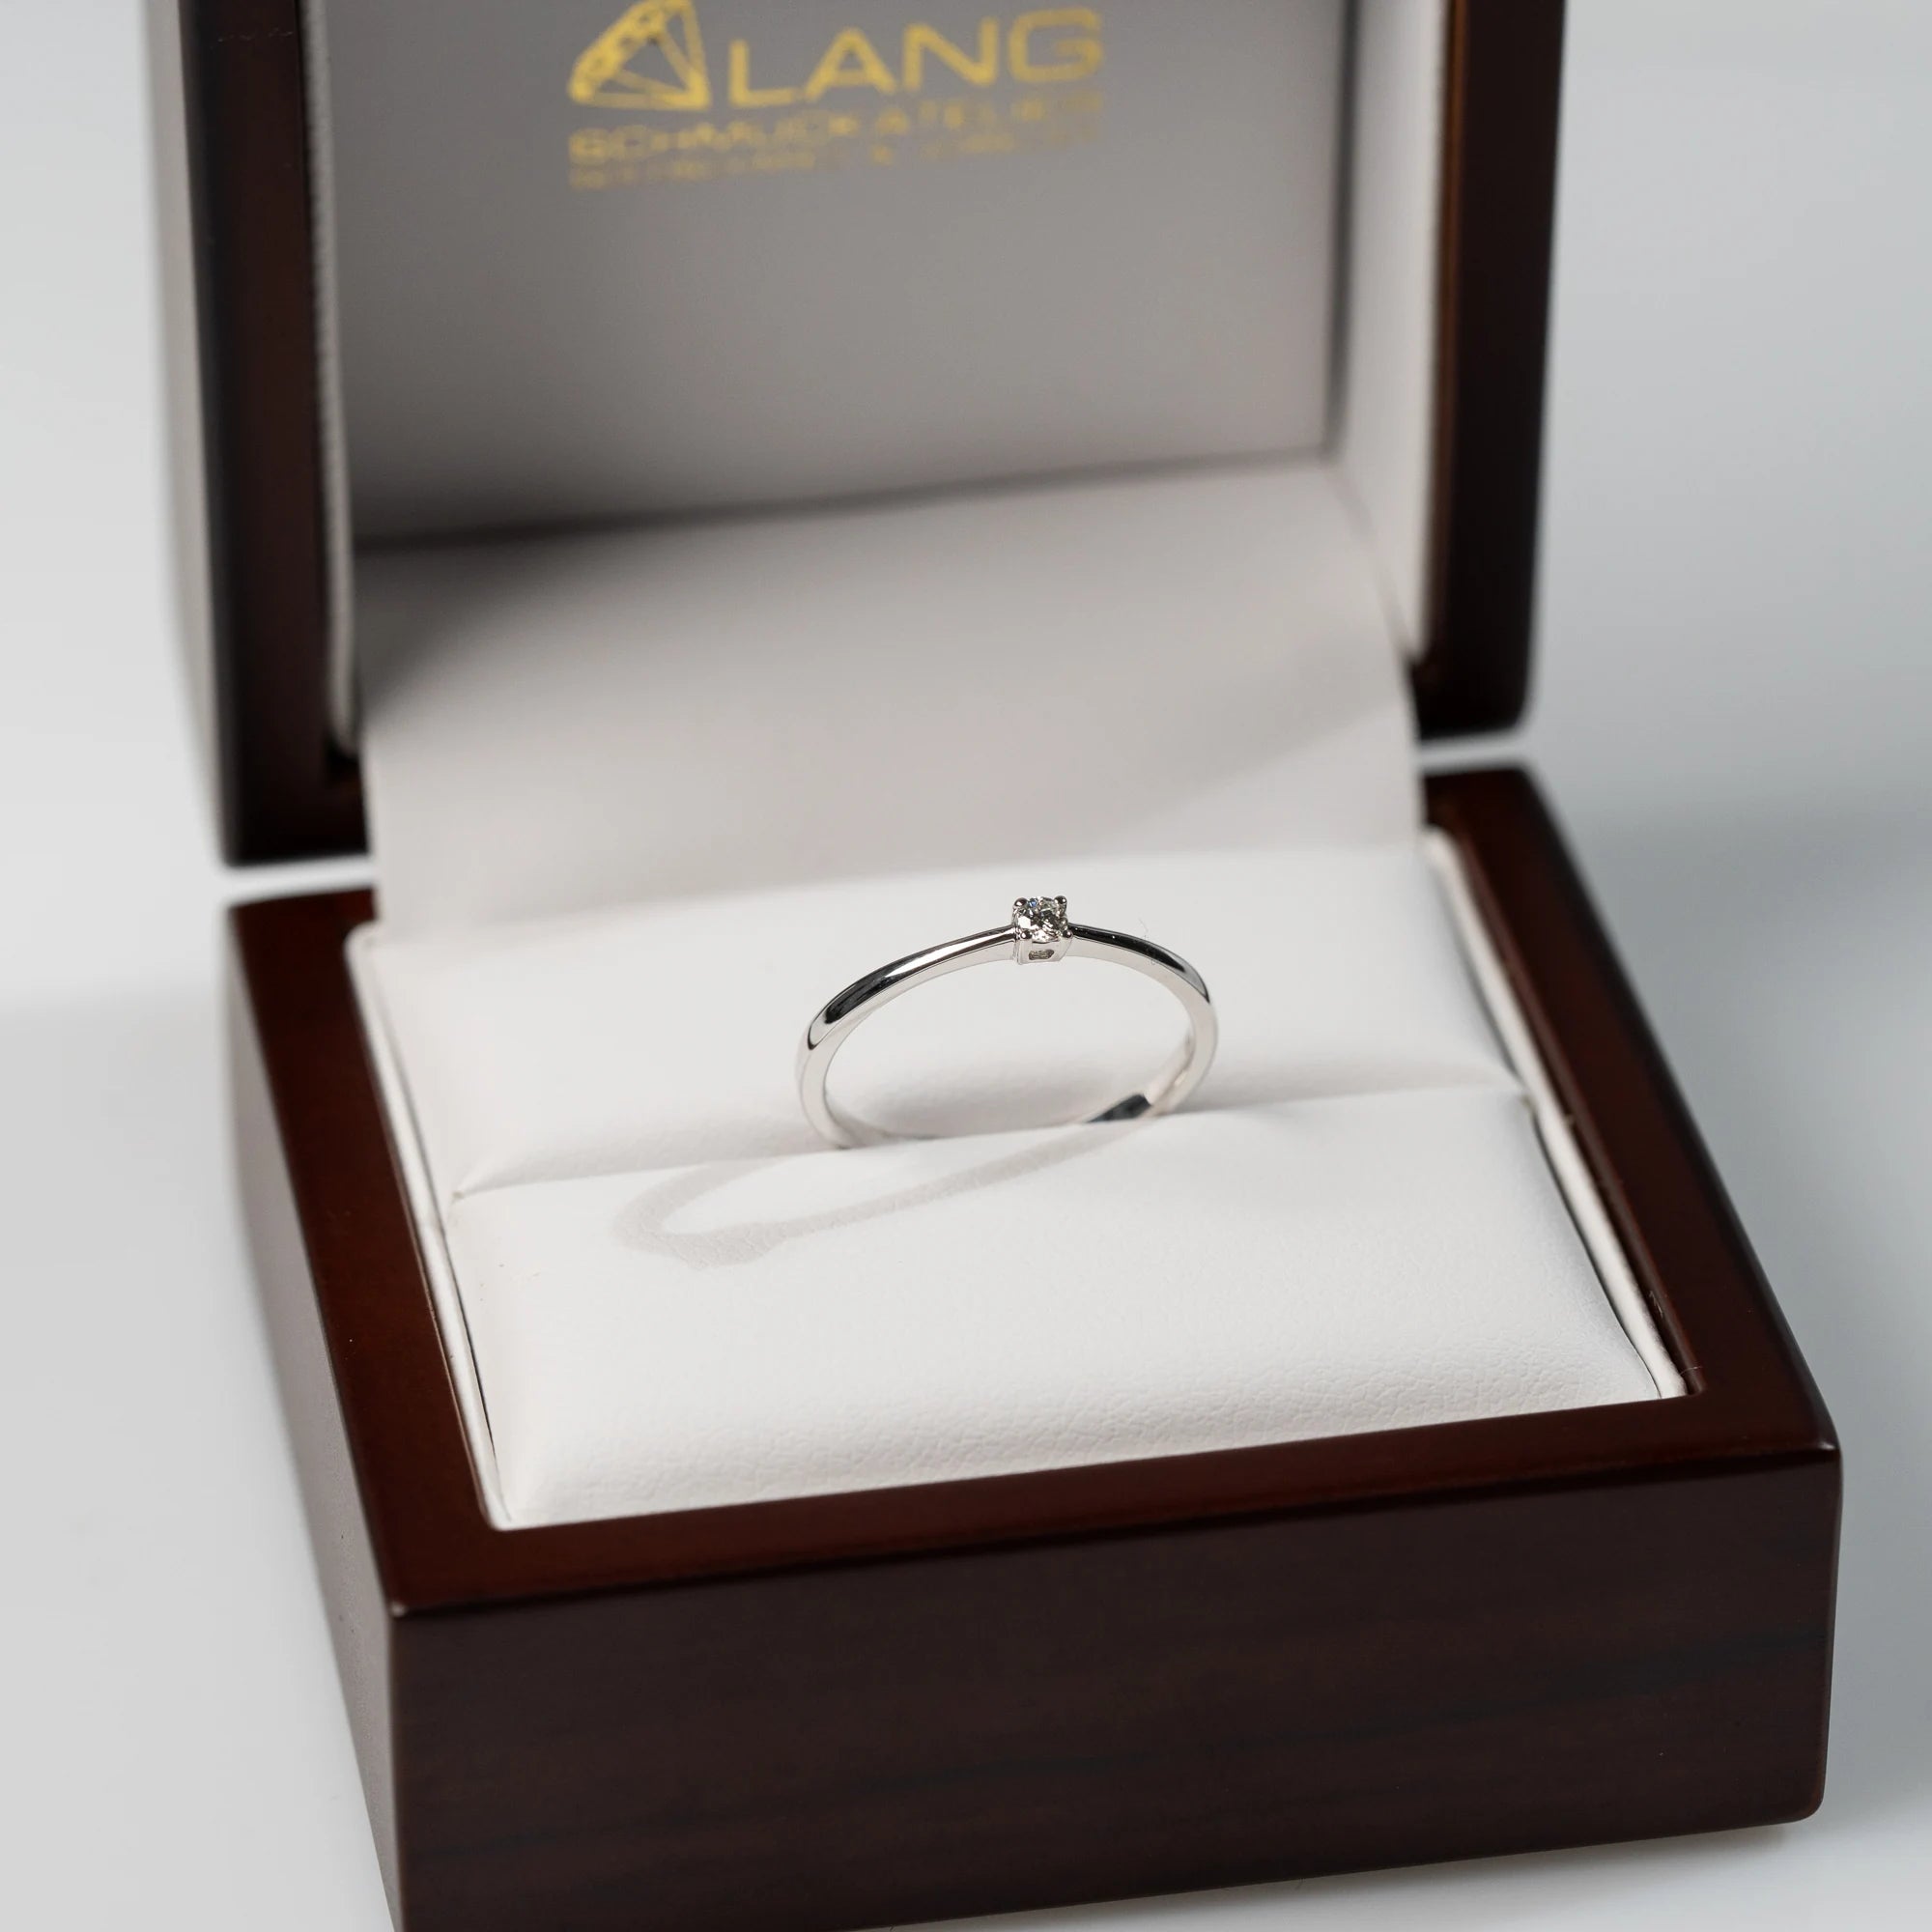 Verlobungsring "Forever" aus der Schmuckatelier Lang Collection mit einem in einer 4er Kappe gefassten Diamanten mit einem Gewicht von 0.1 Carat steckt in der hölzernen Schmuck-Box